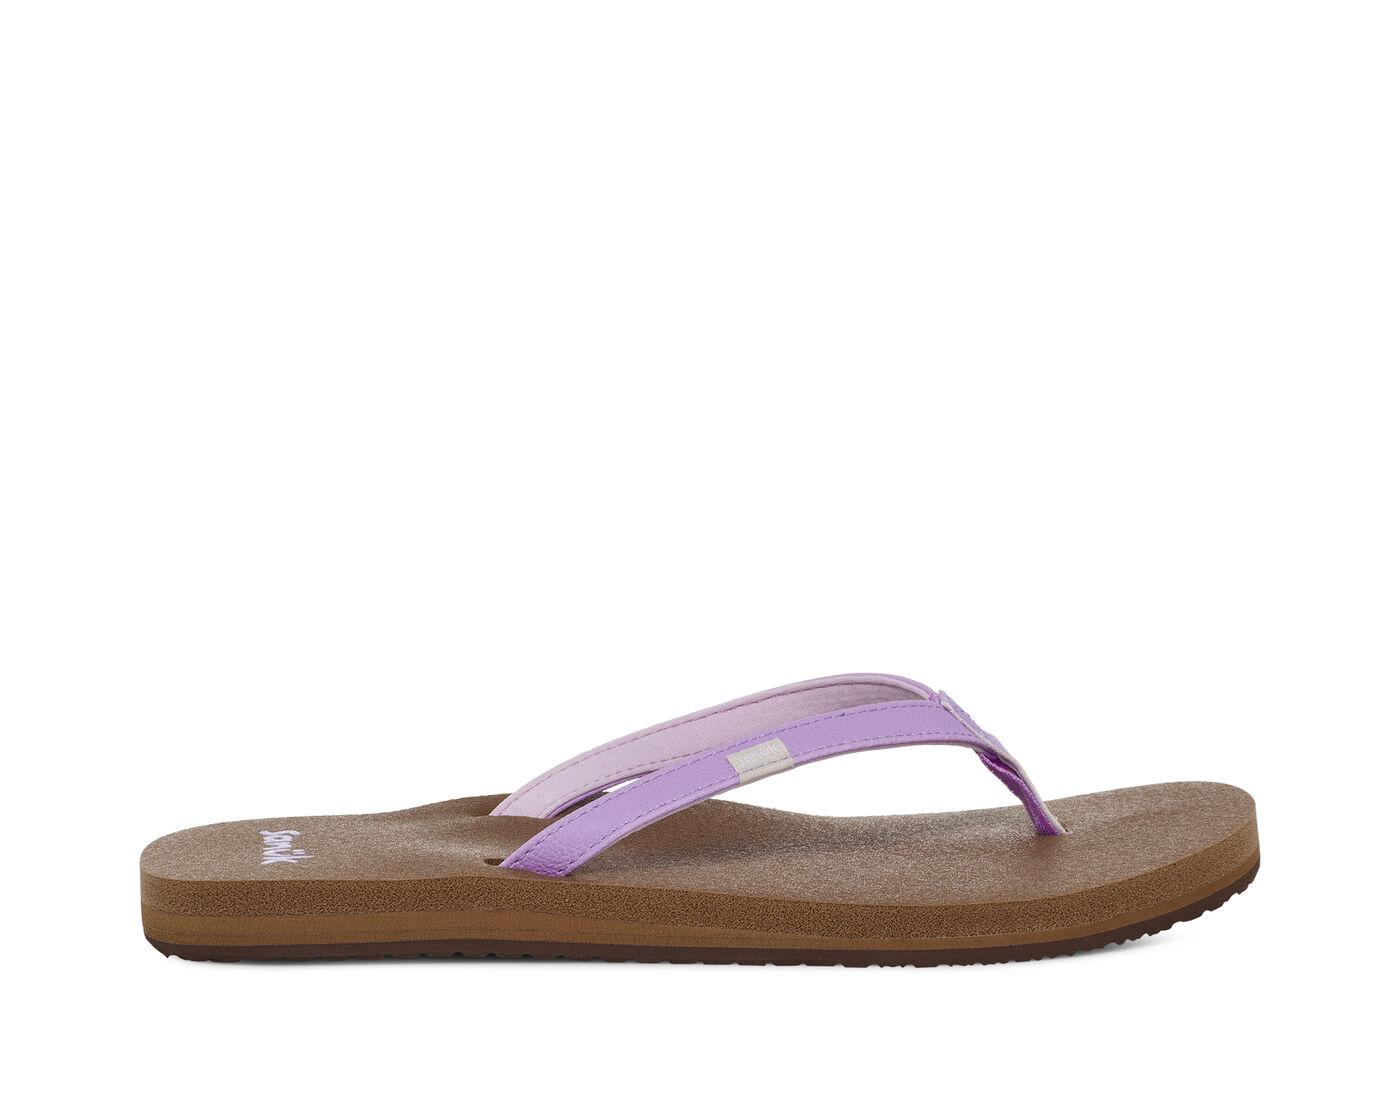 Sanuk Women's Shoes Yoga Joy Flip Flop Toe Post Sandals SWS10275